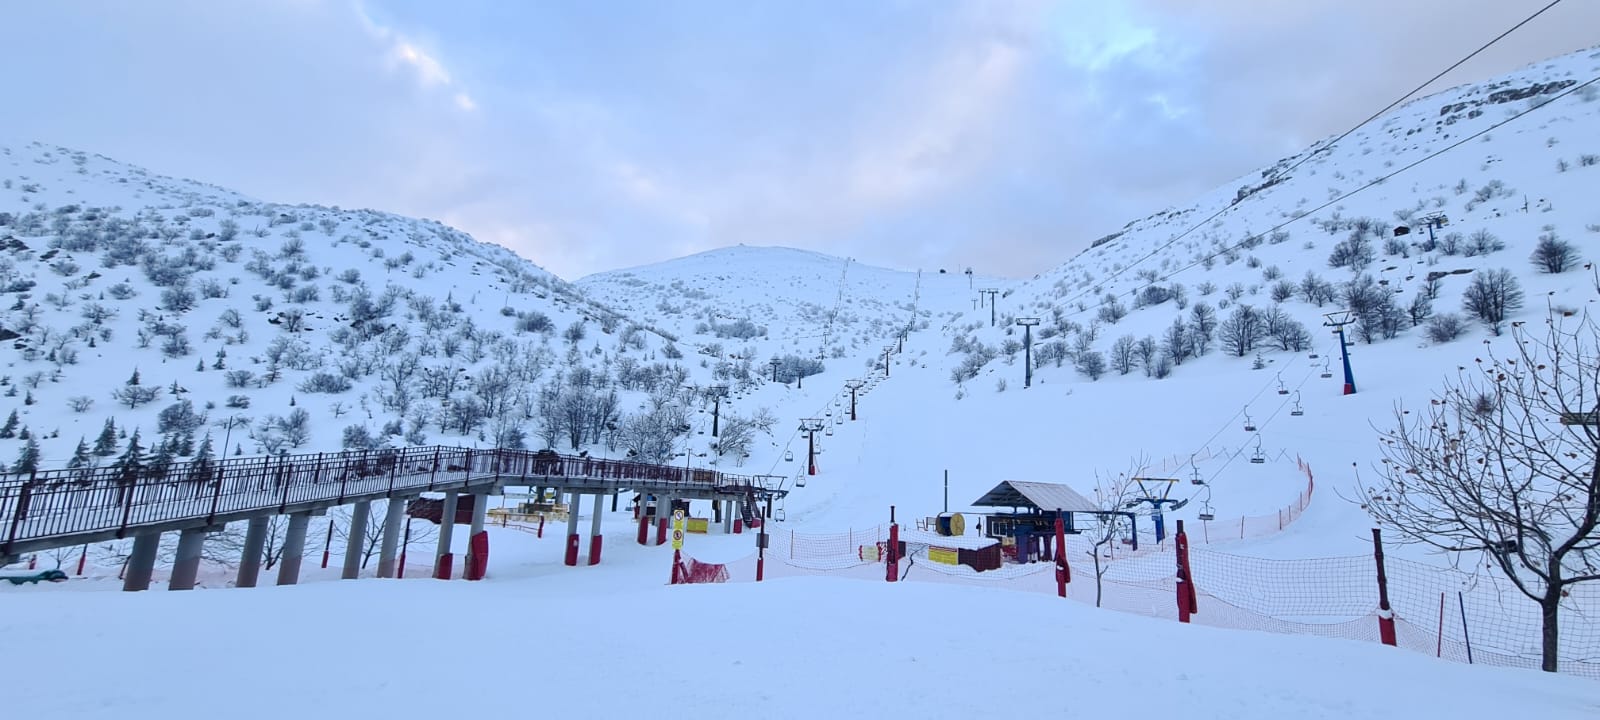 אתר החרמון נפתח הבוקר למבקרים וגולשים: גובה השלג במפלס התחתון 1.70 מטרים